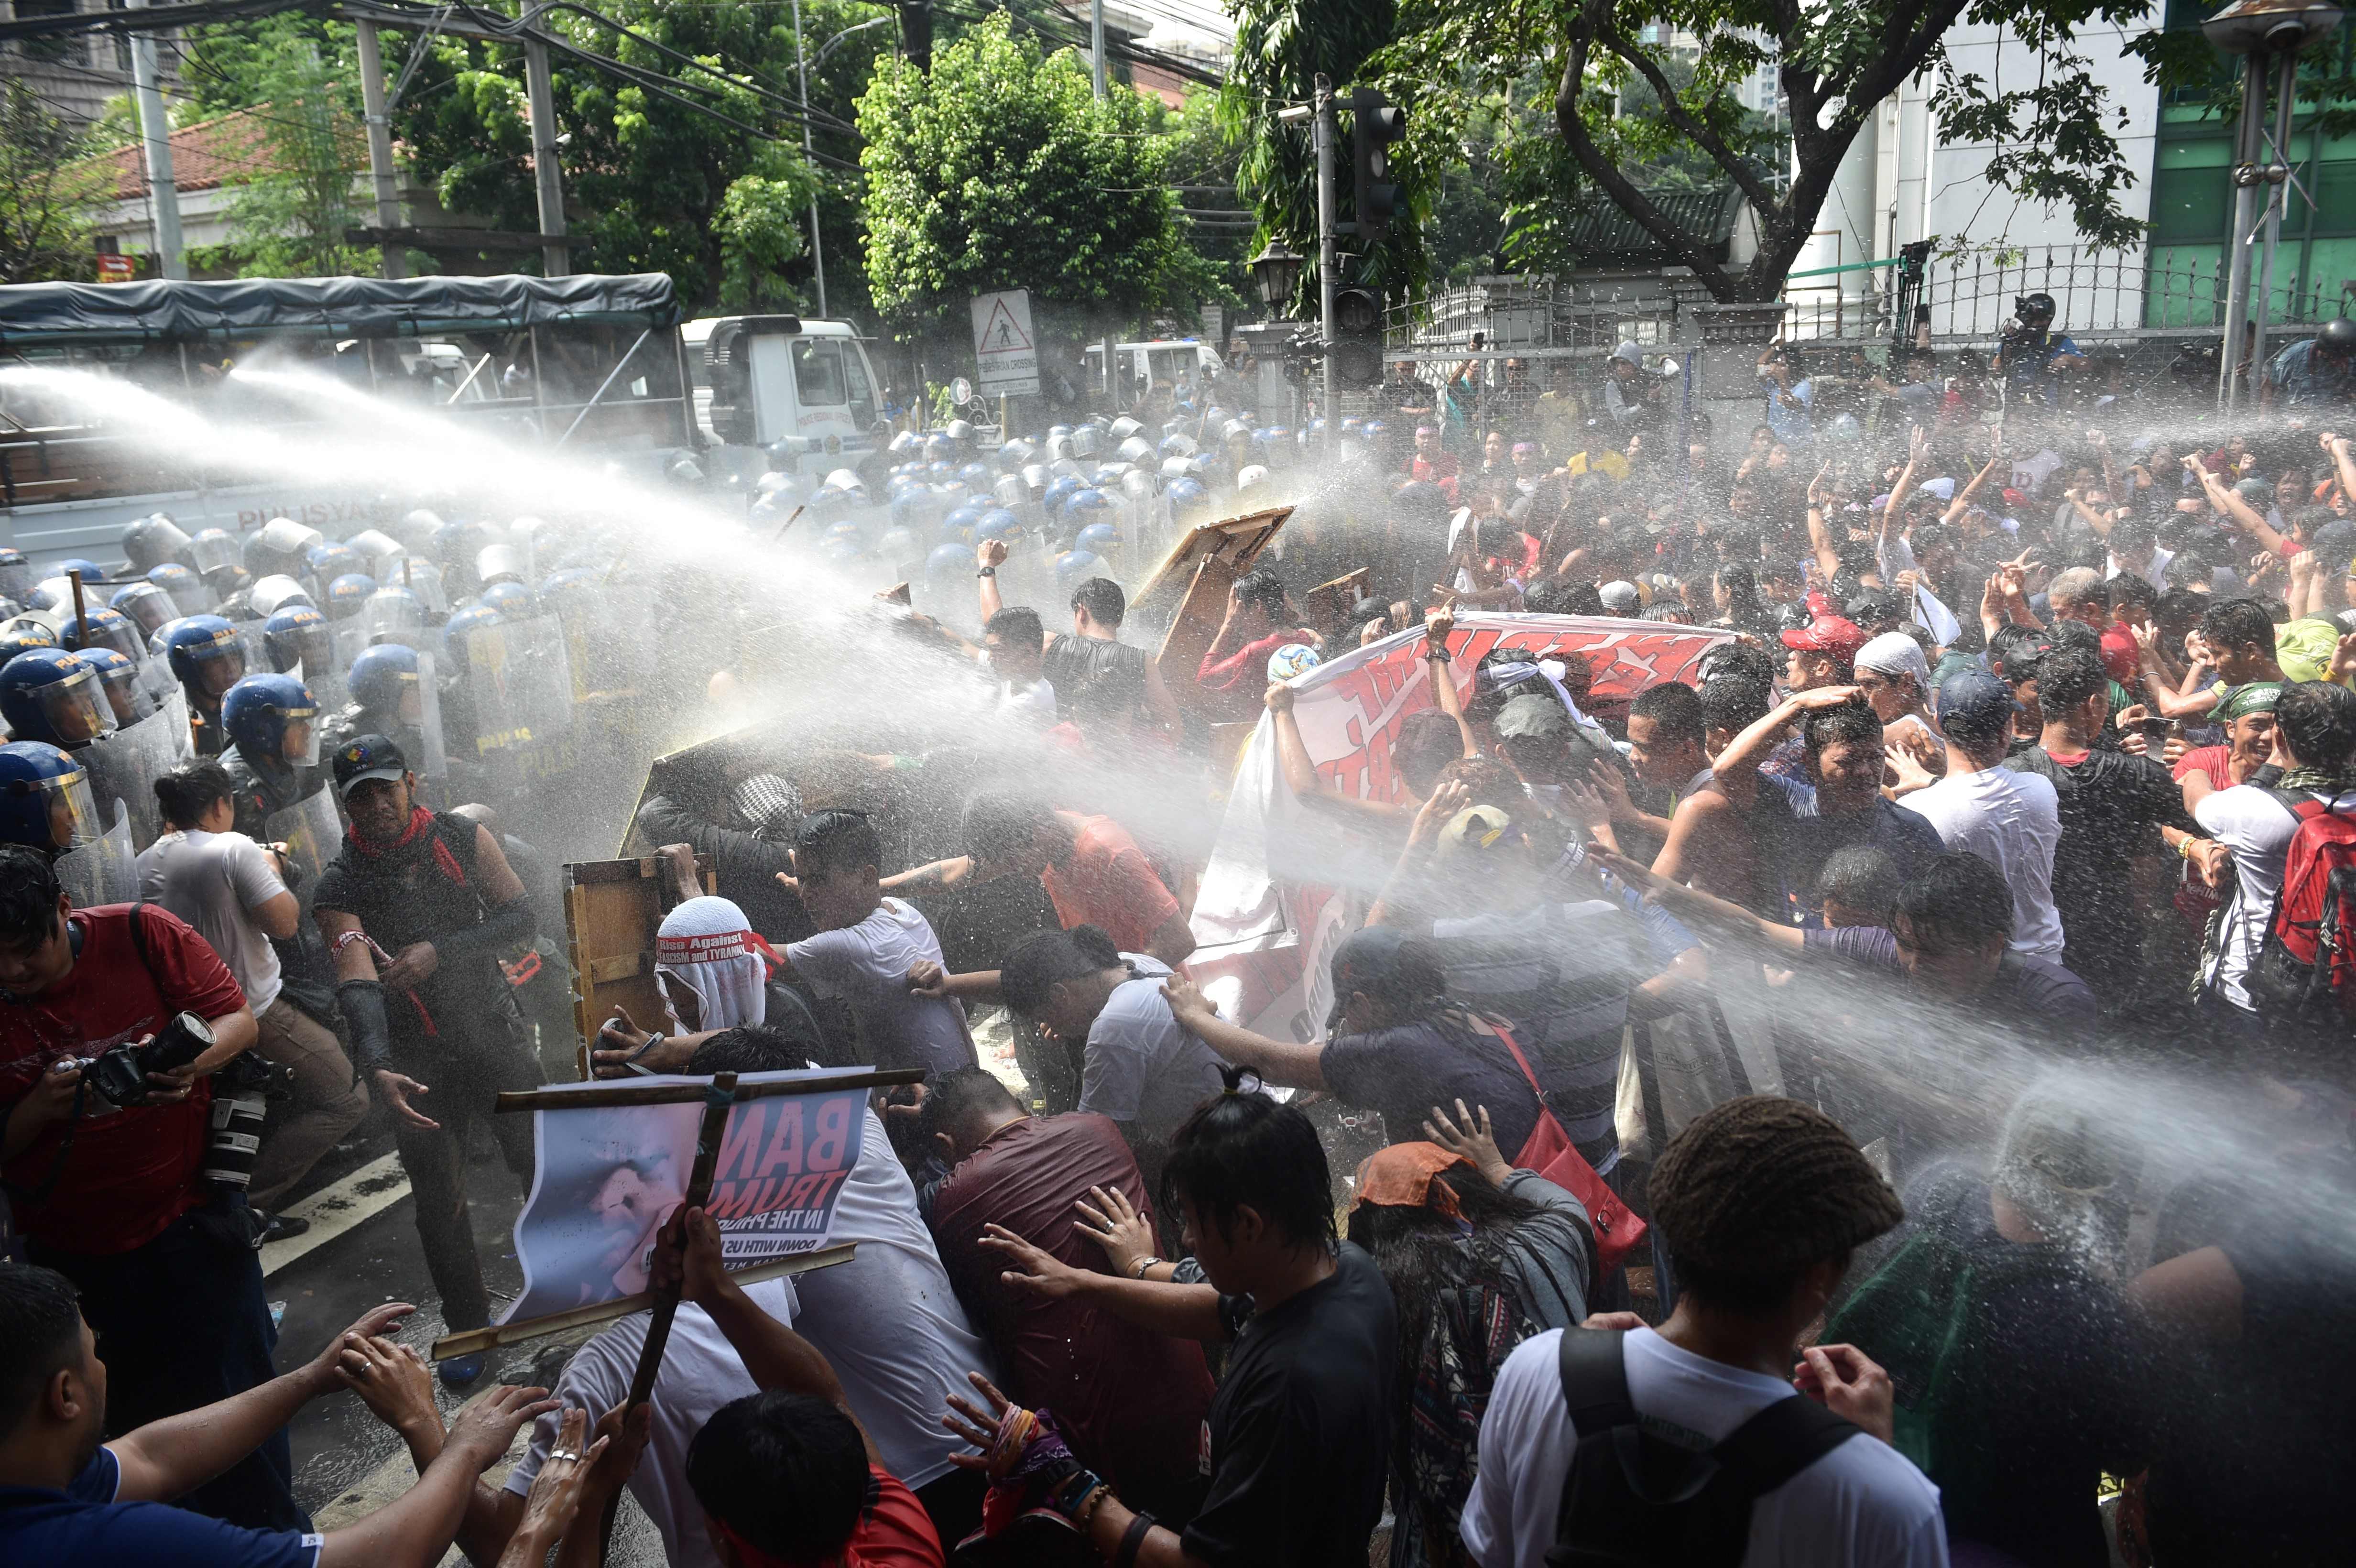 خراطيم المياه لتفريق المتظاهرين